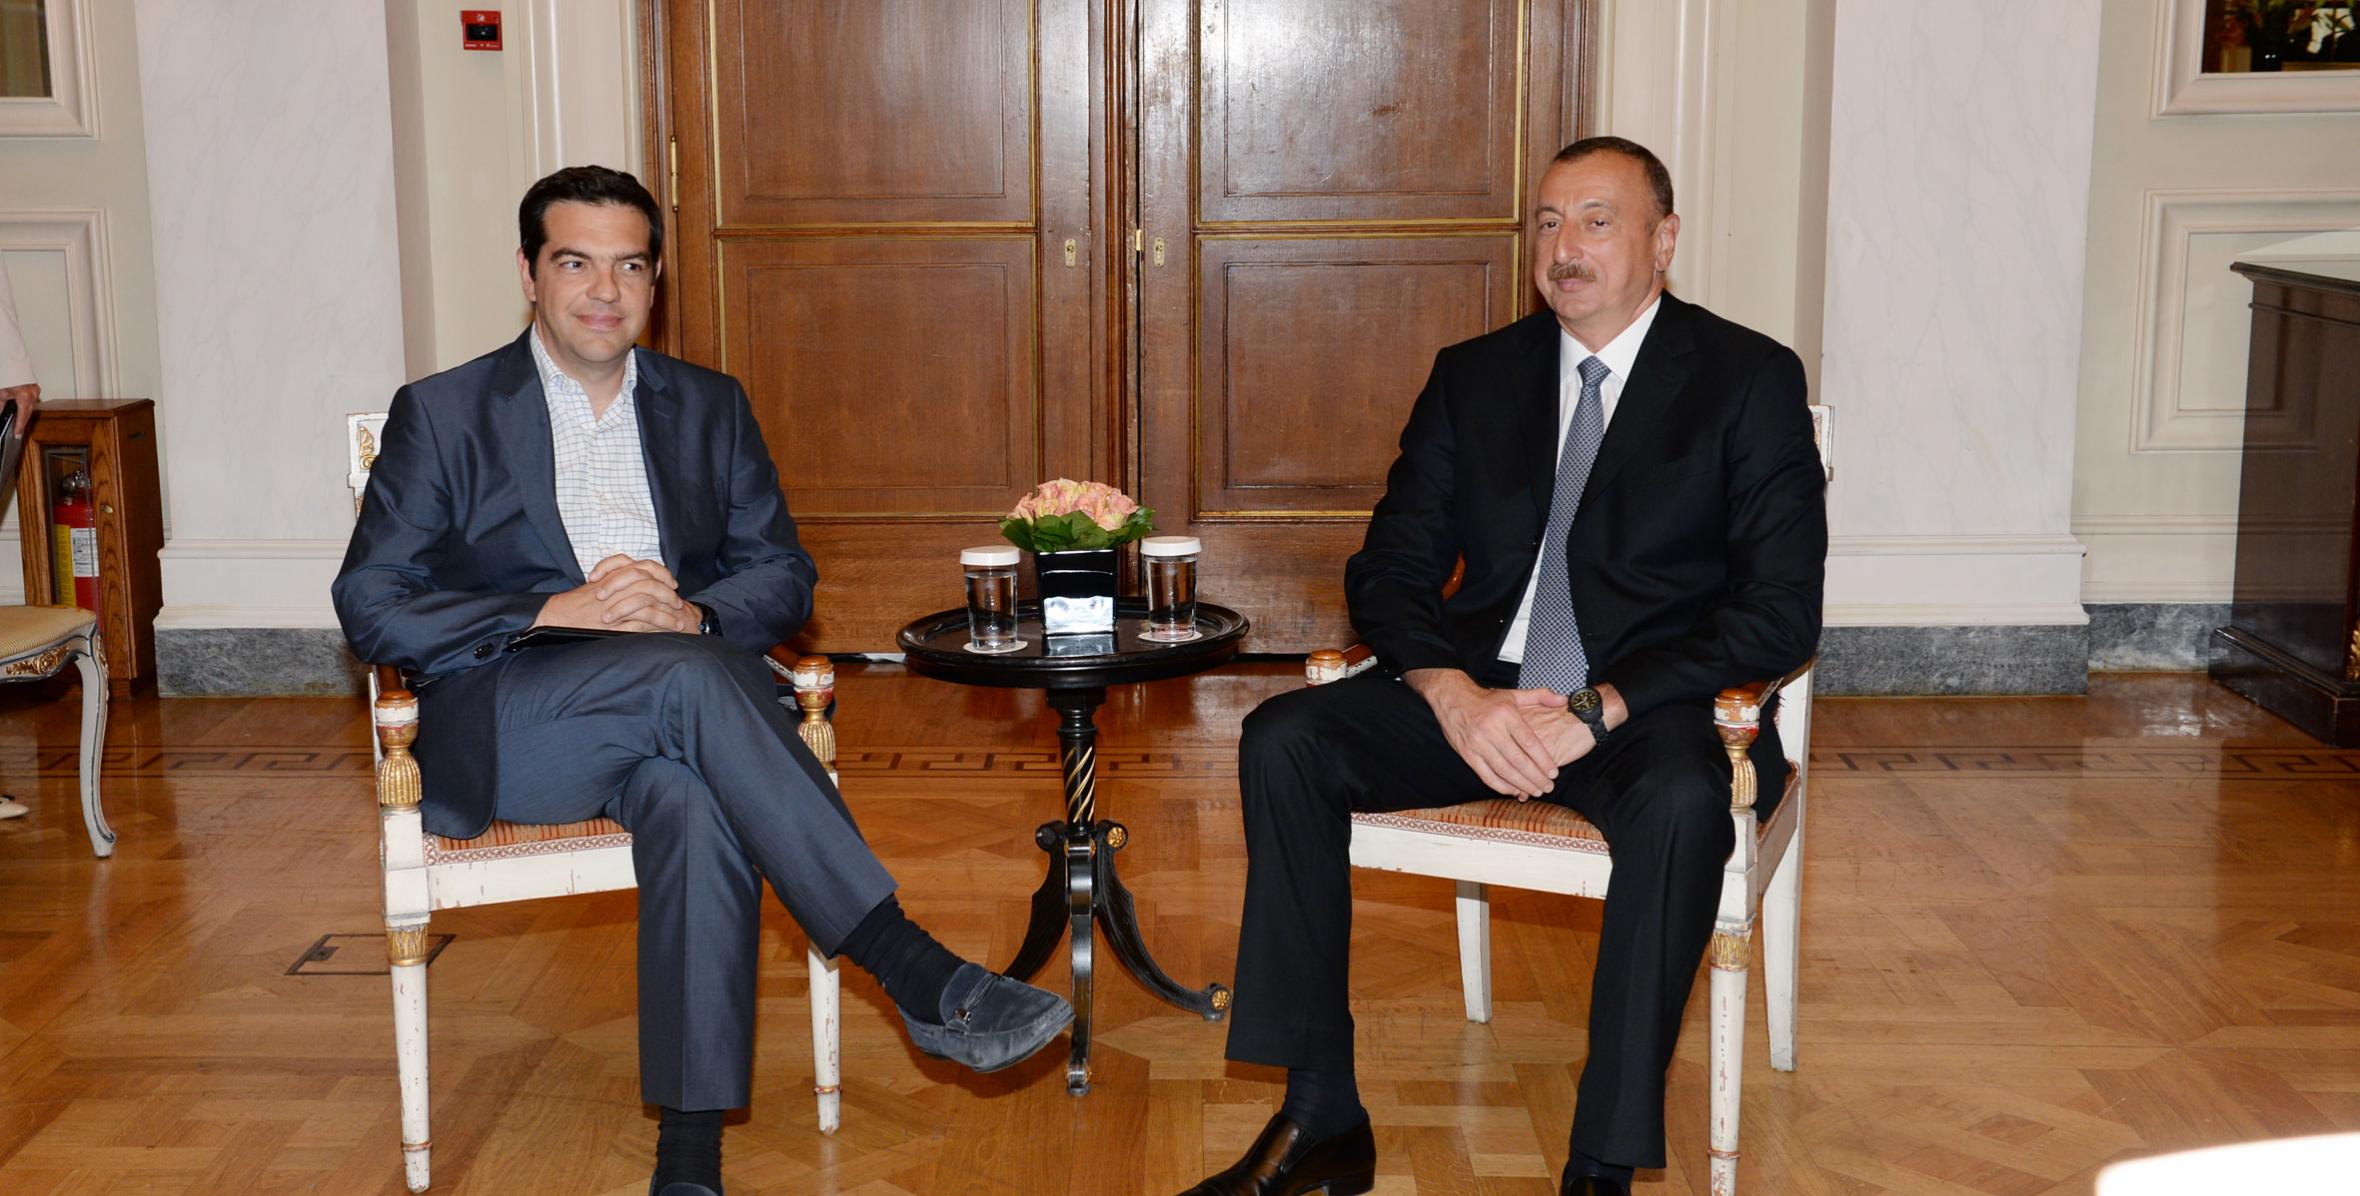 Ильхам Алиев встретился с лидером оппозиции в парламенте Греции - Коалиции демократических левых сил Алексисом Ципрасом